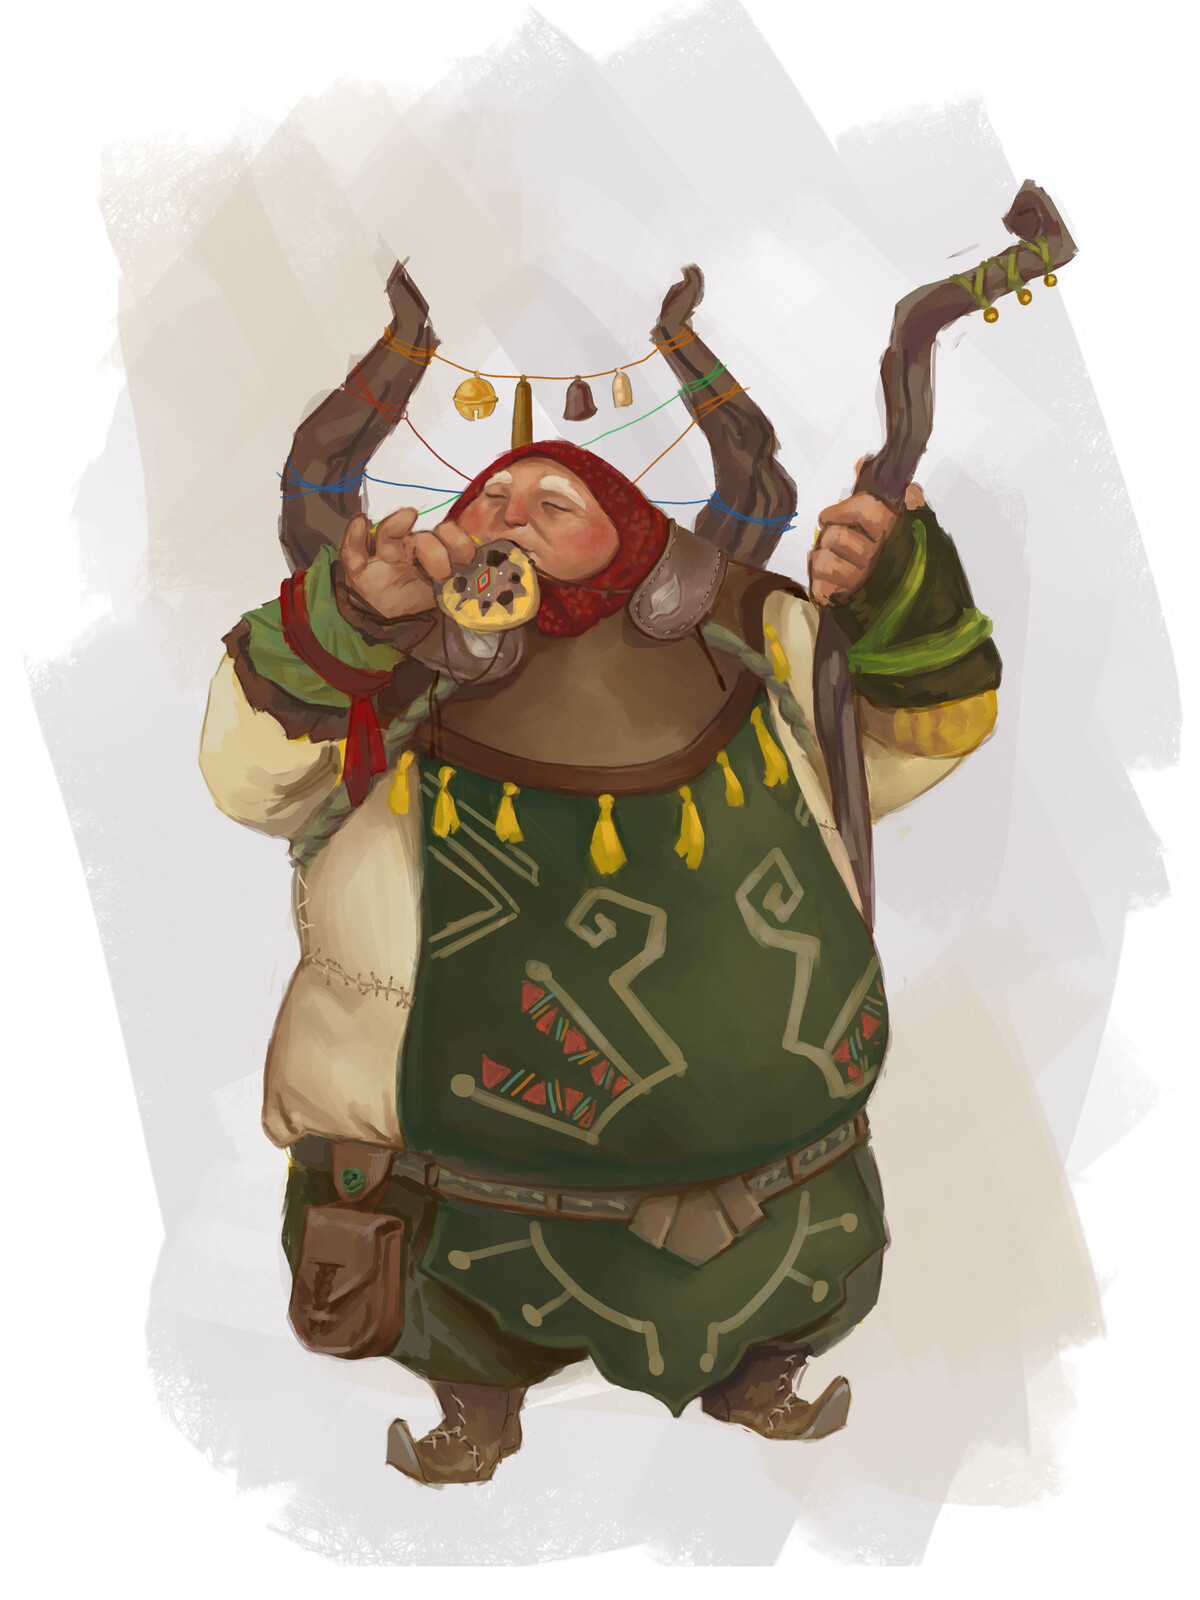 Poko, the bard druid